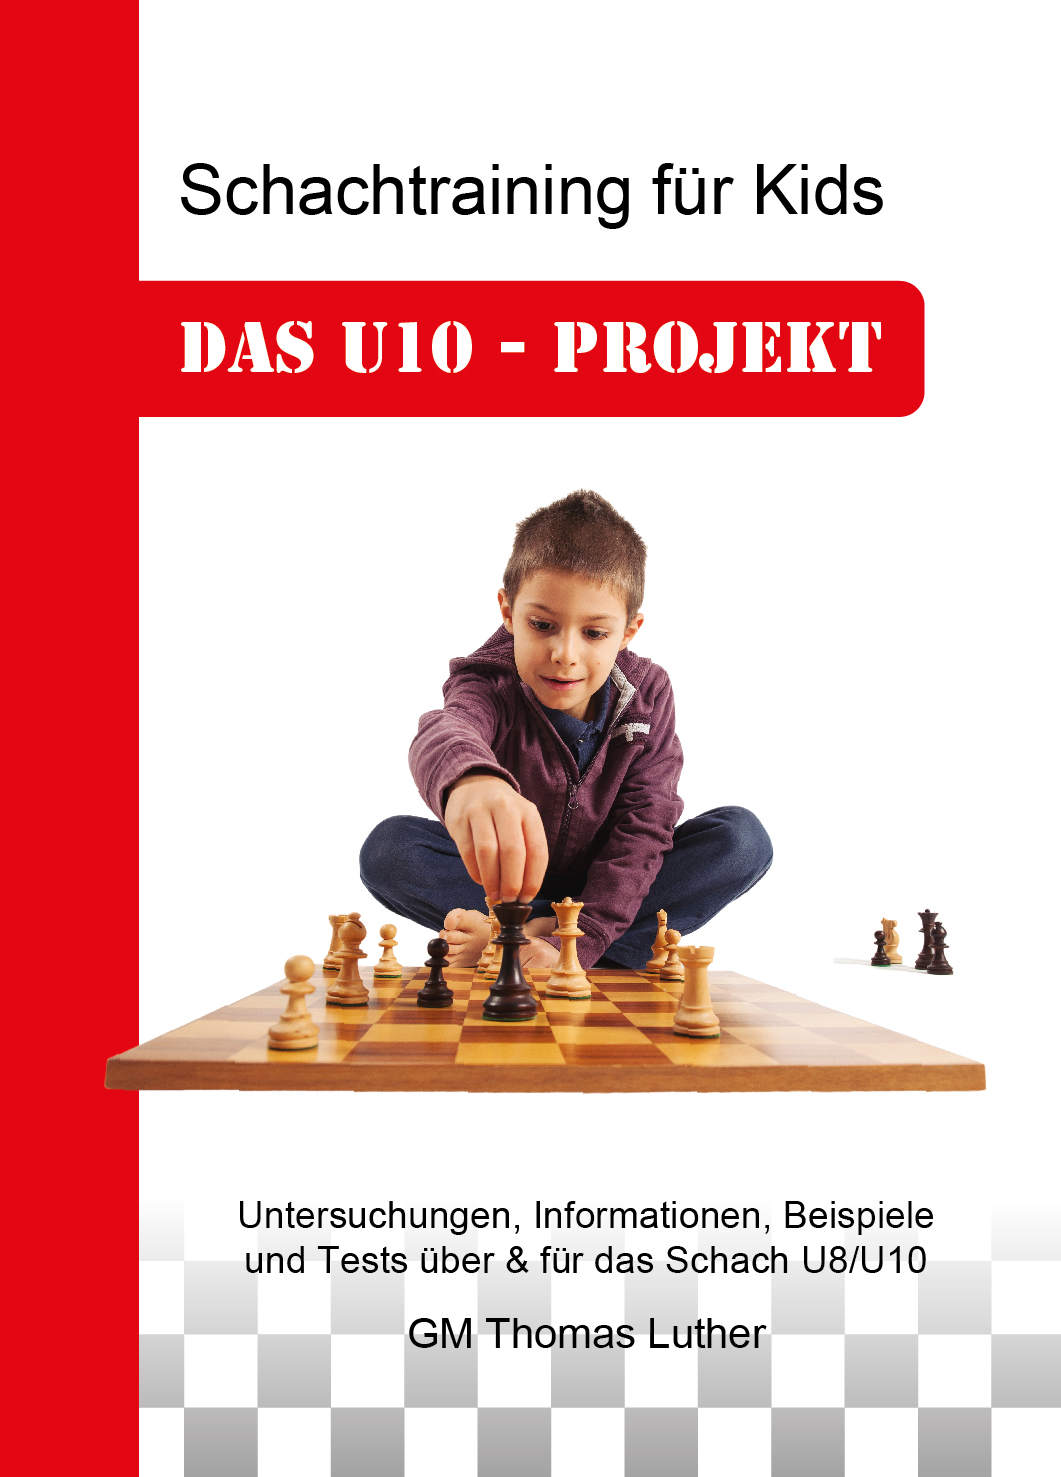 Das U10 - Projekt Schachtraining für Kids